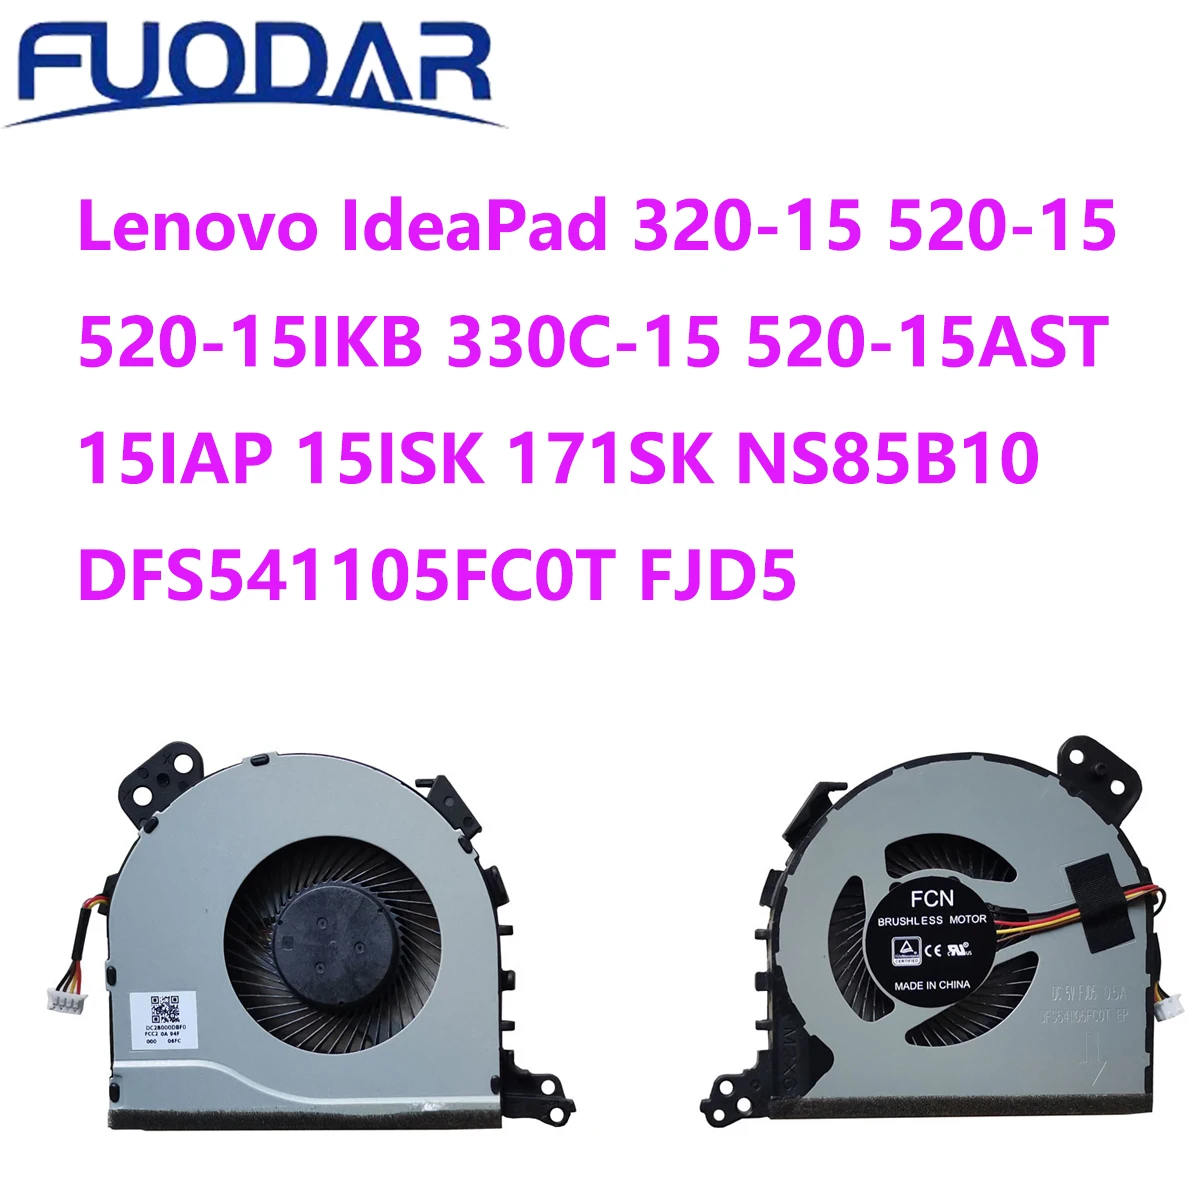 

Lenovo IdeaPad 320-15 520-15 520-15IKB 330C-15 520-15AST 15IAP 15ISK 171SK NS85B10 DFS541105FC0T FJD5 CPU Cooling Fan